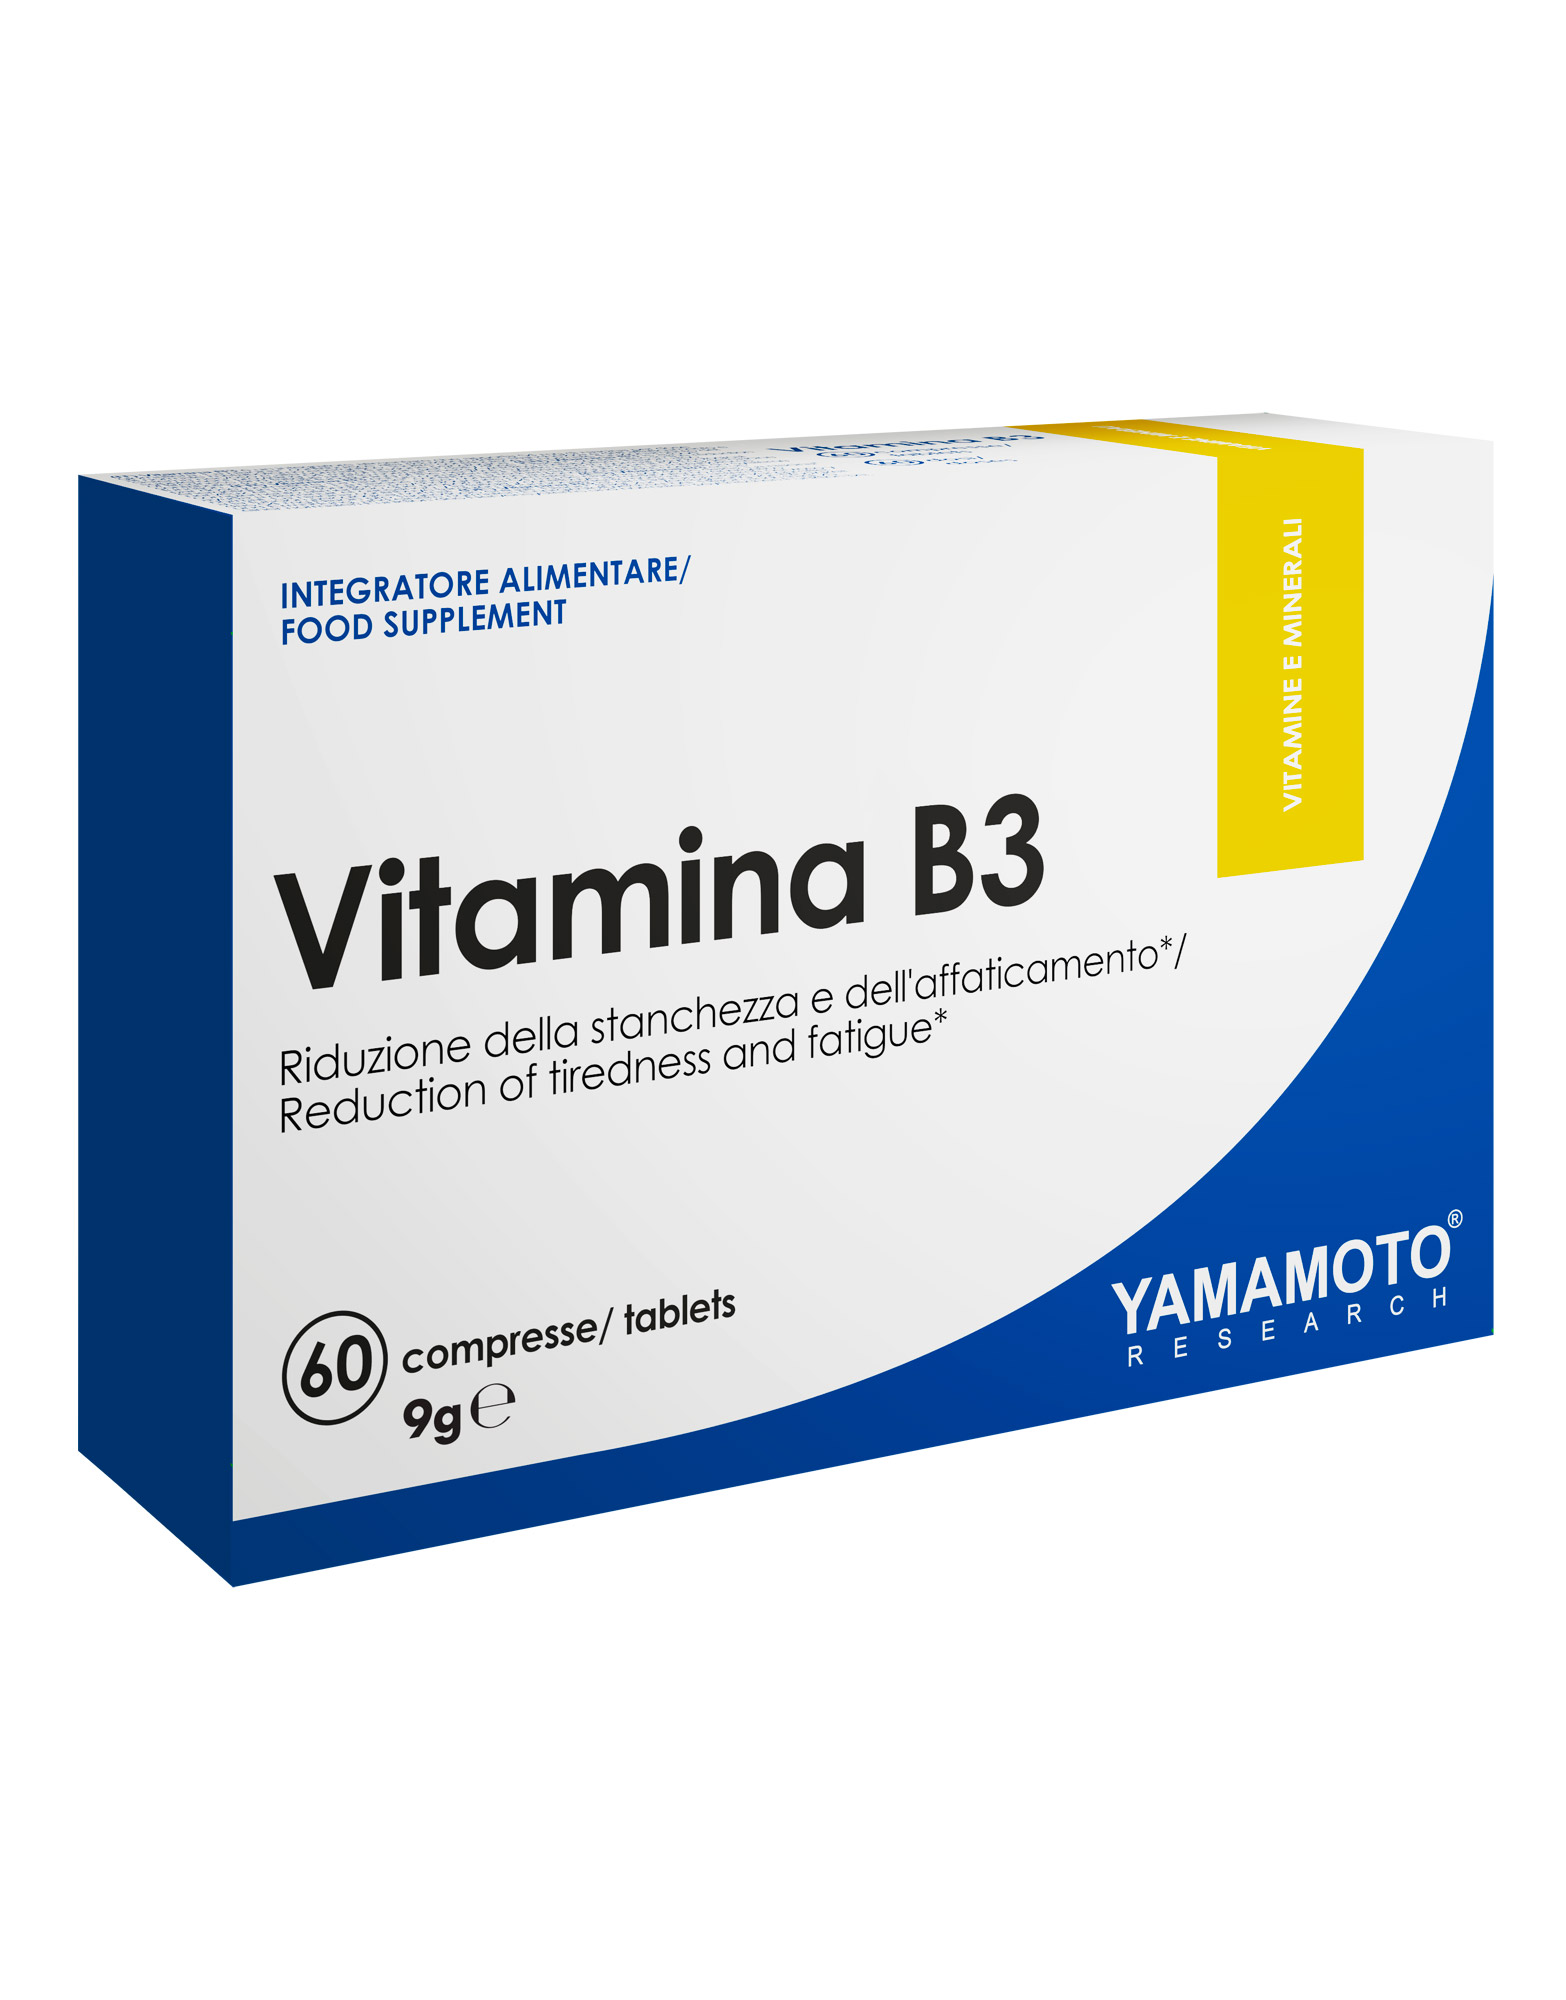 Vitamina B3 Niacina 54mg 60 tablets